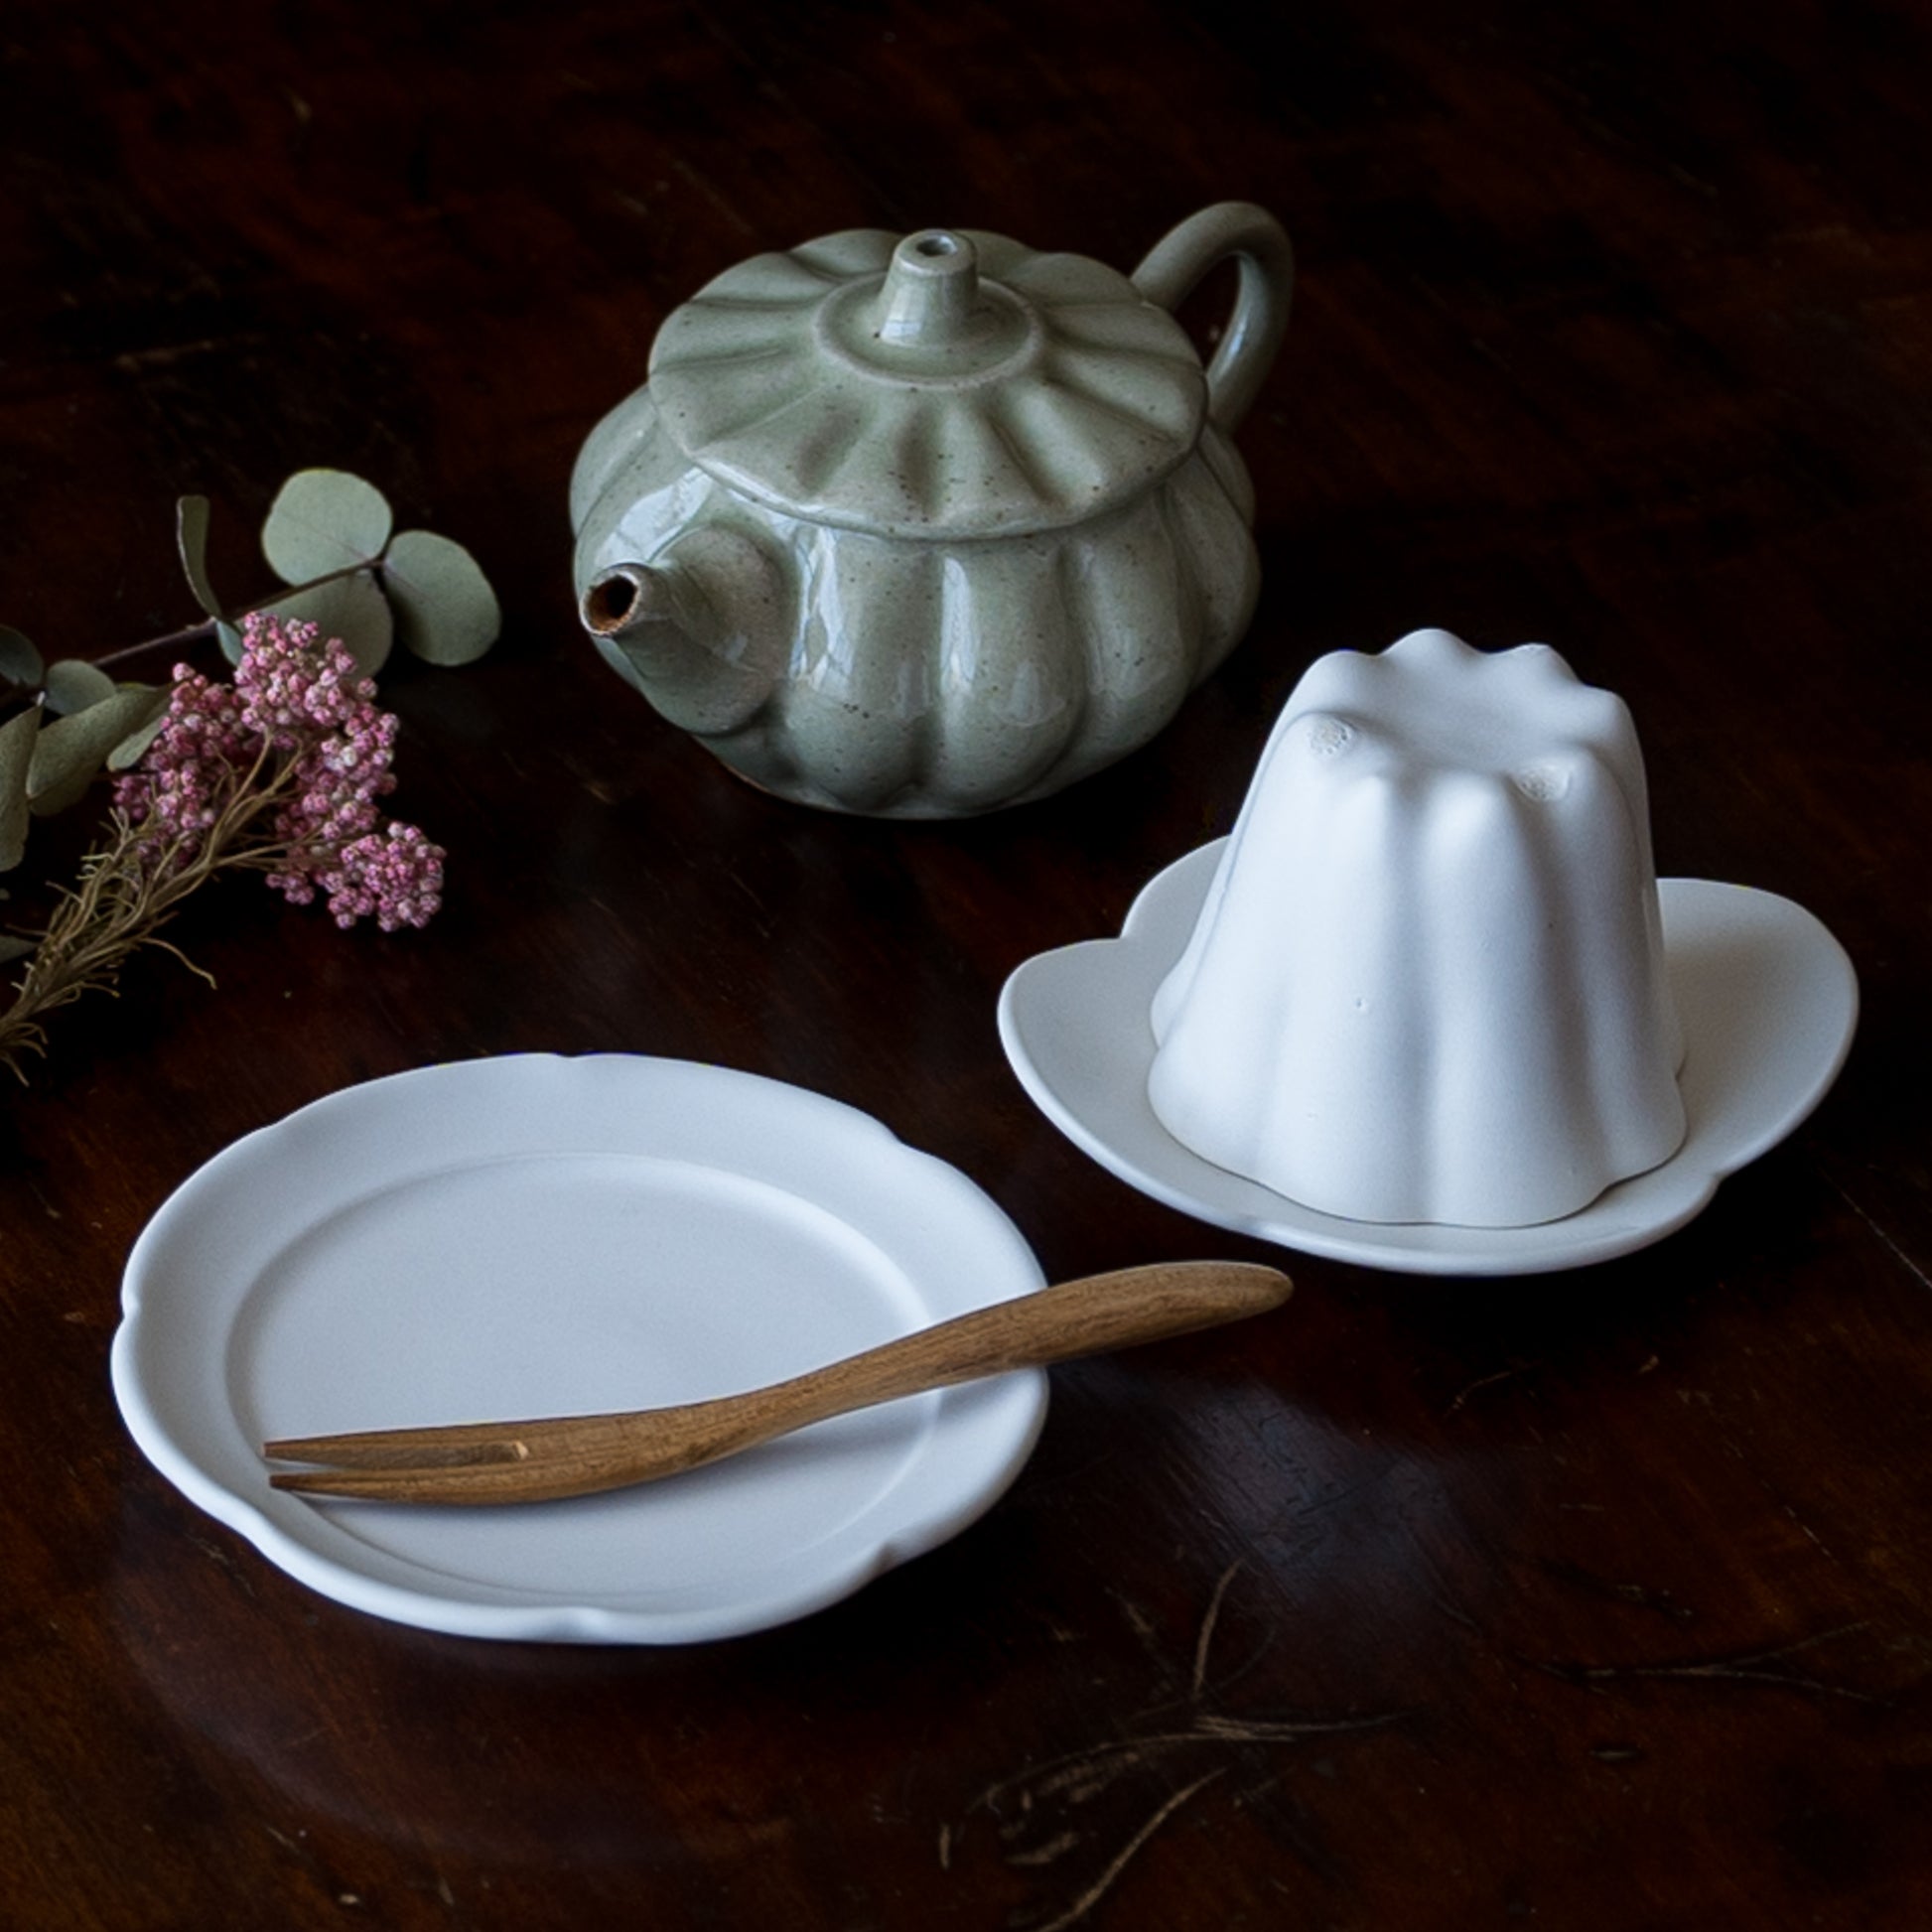 ほっと一息タイムを優雅に過ごせる藤村佳澄さんの花型豆皿